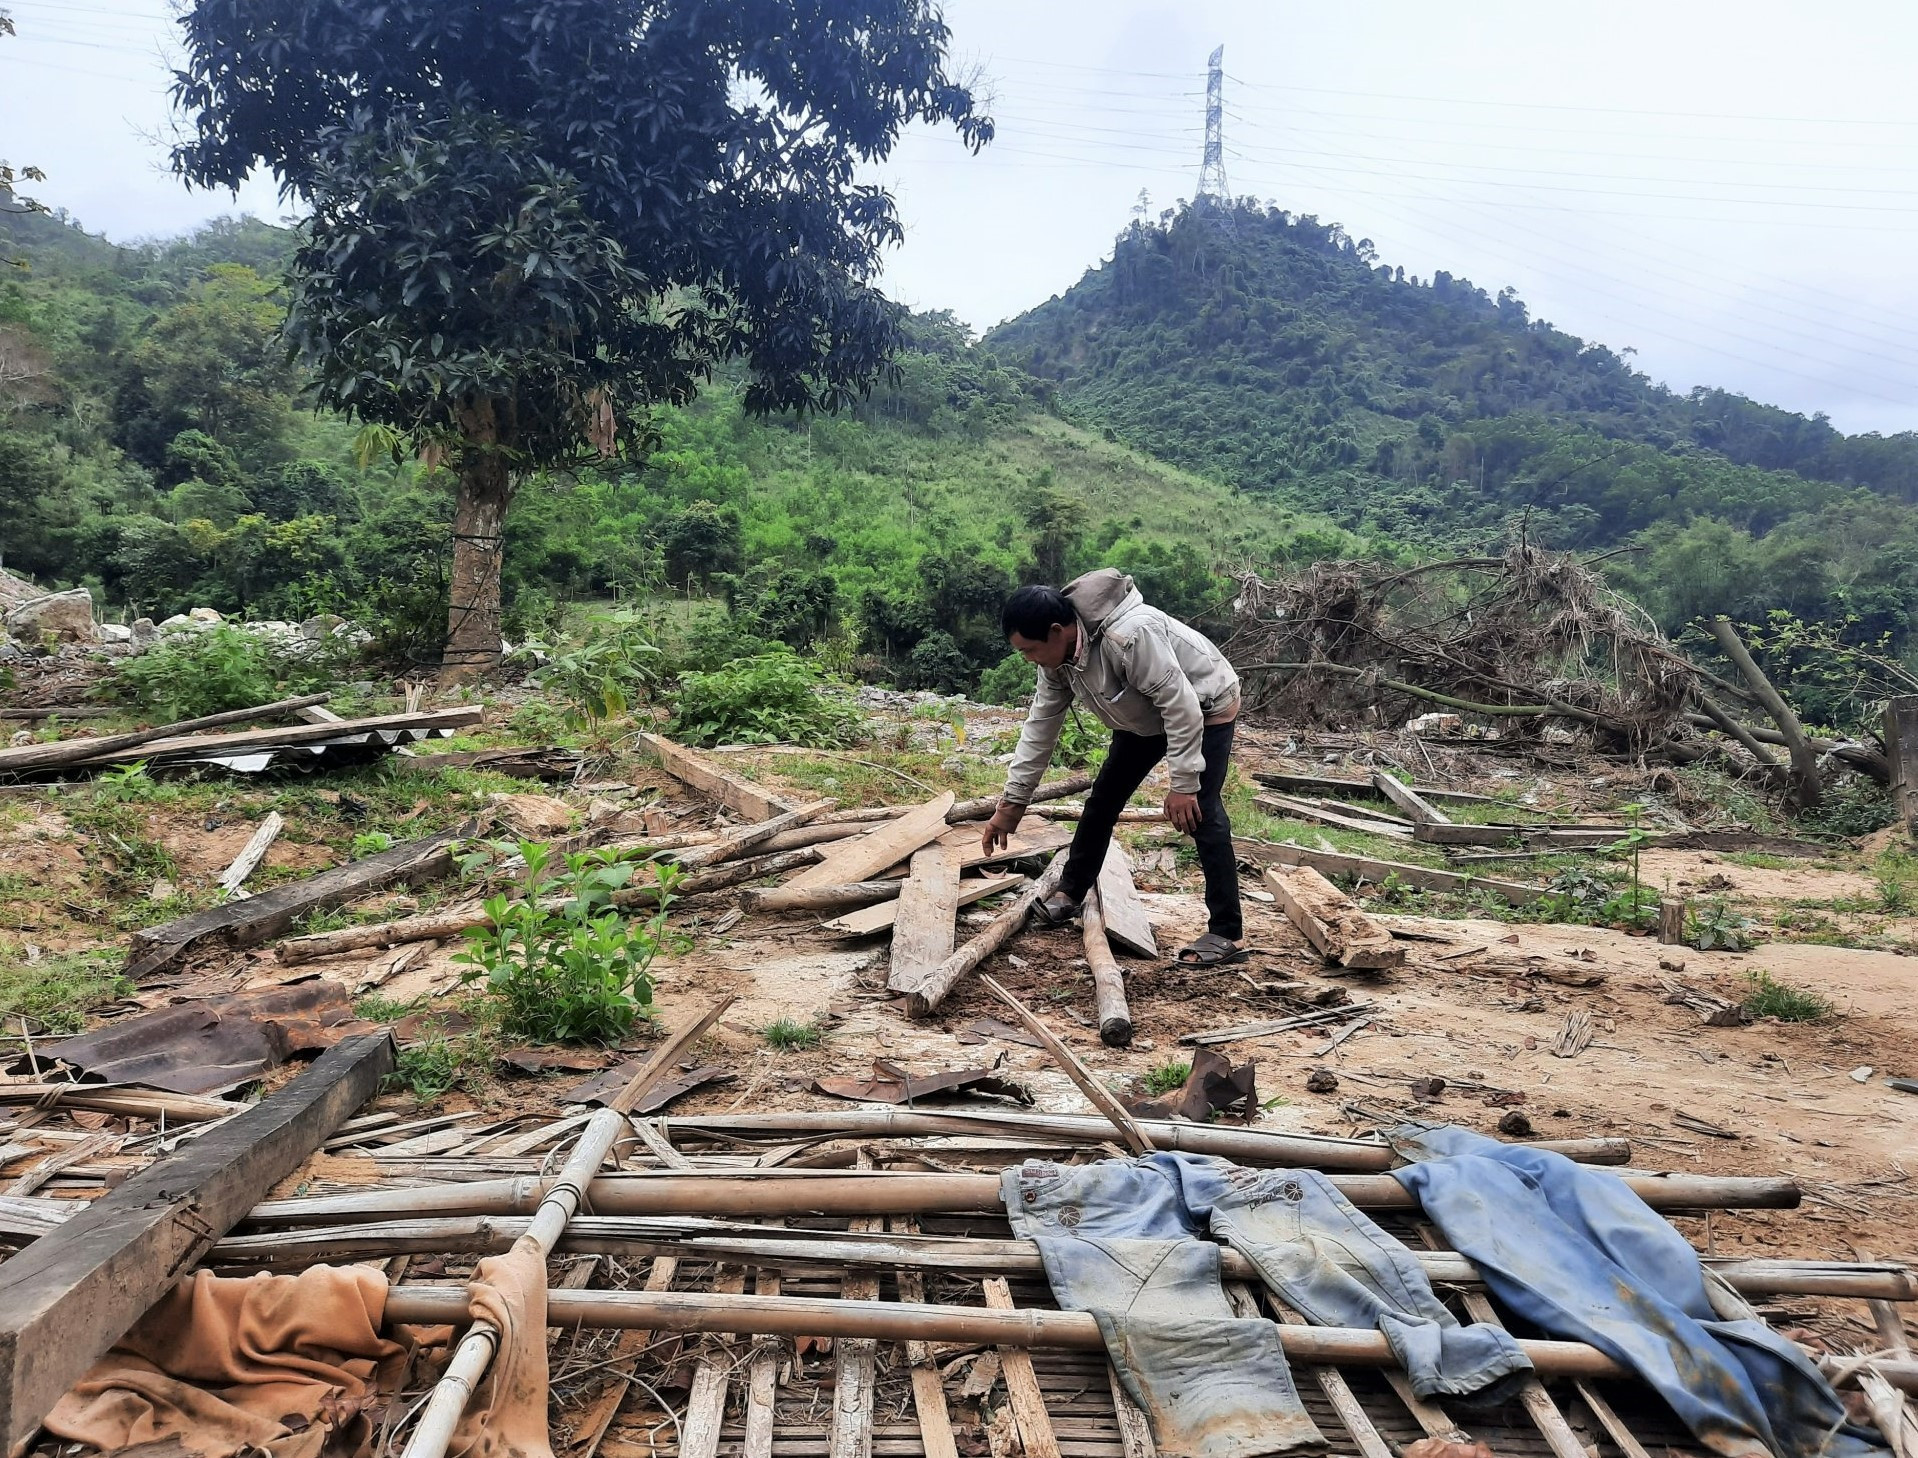 Nhiều nhà cửa, hoa màu của người dân Nam Giang bị thiệt hại trong đợt mưa lũ năm 2020, nhưng đến nay vẫn chưa nhận được tiền hỗ trợ theo Nghị định 02 của Chính phủ. Ảnh: ĐĂNG NGUYÊN